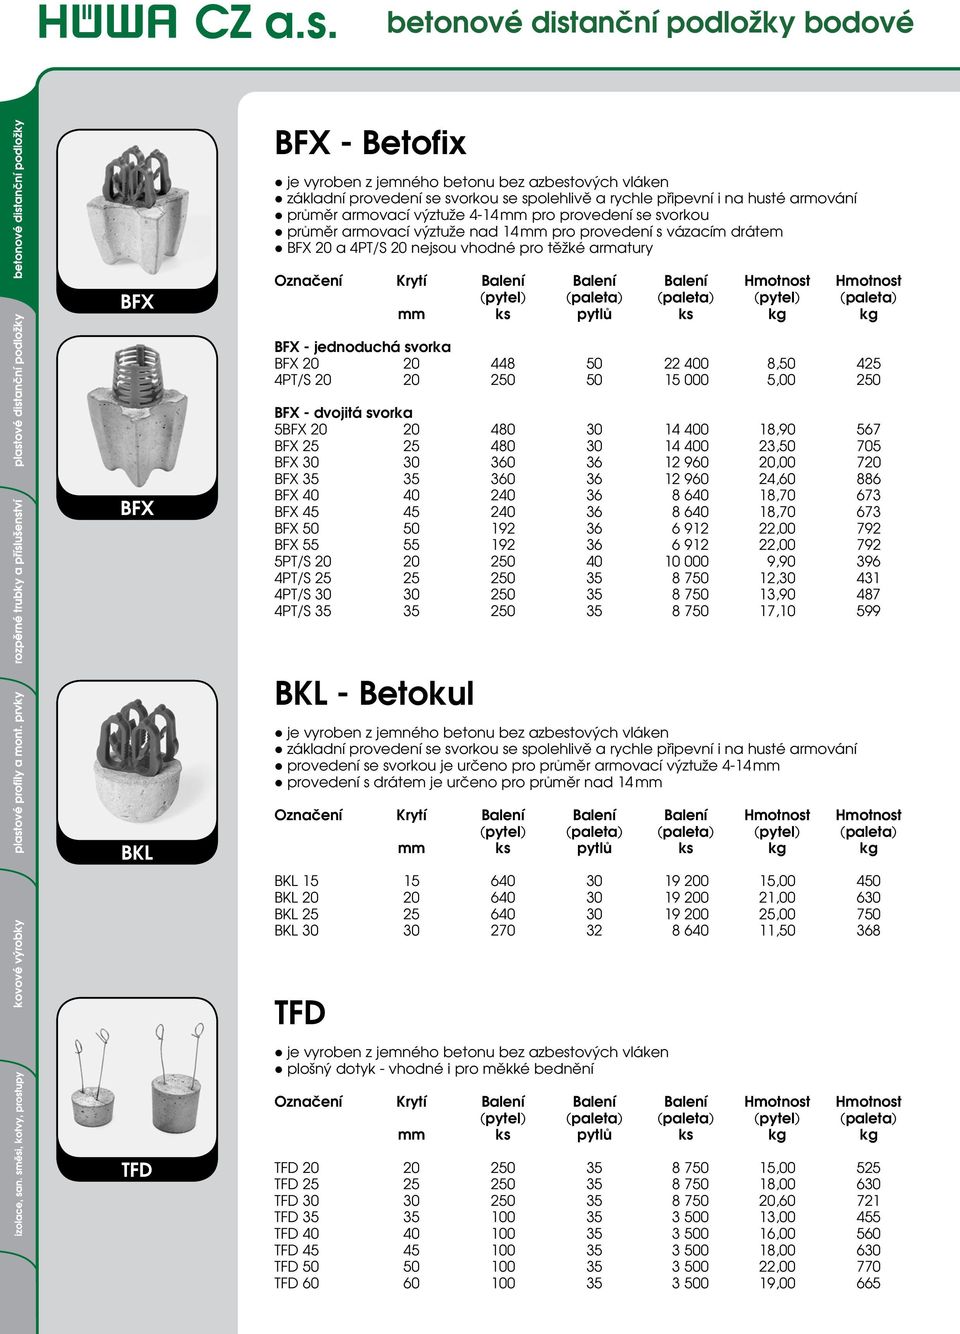 Označení Krytí Balení Balení Balení Hmotnost Hmotnost (pytel) (paleta) ( paleta) (pytel) (paleta) mm ks pytlů ks kg kg - PDF Free Download